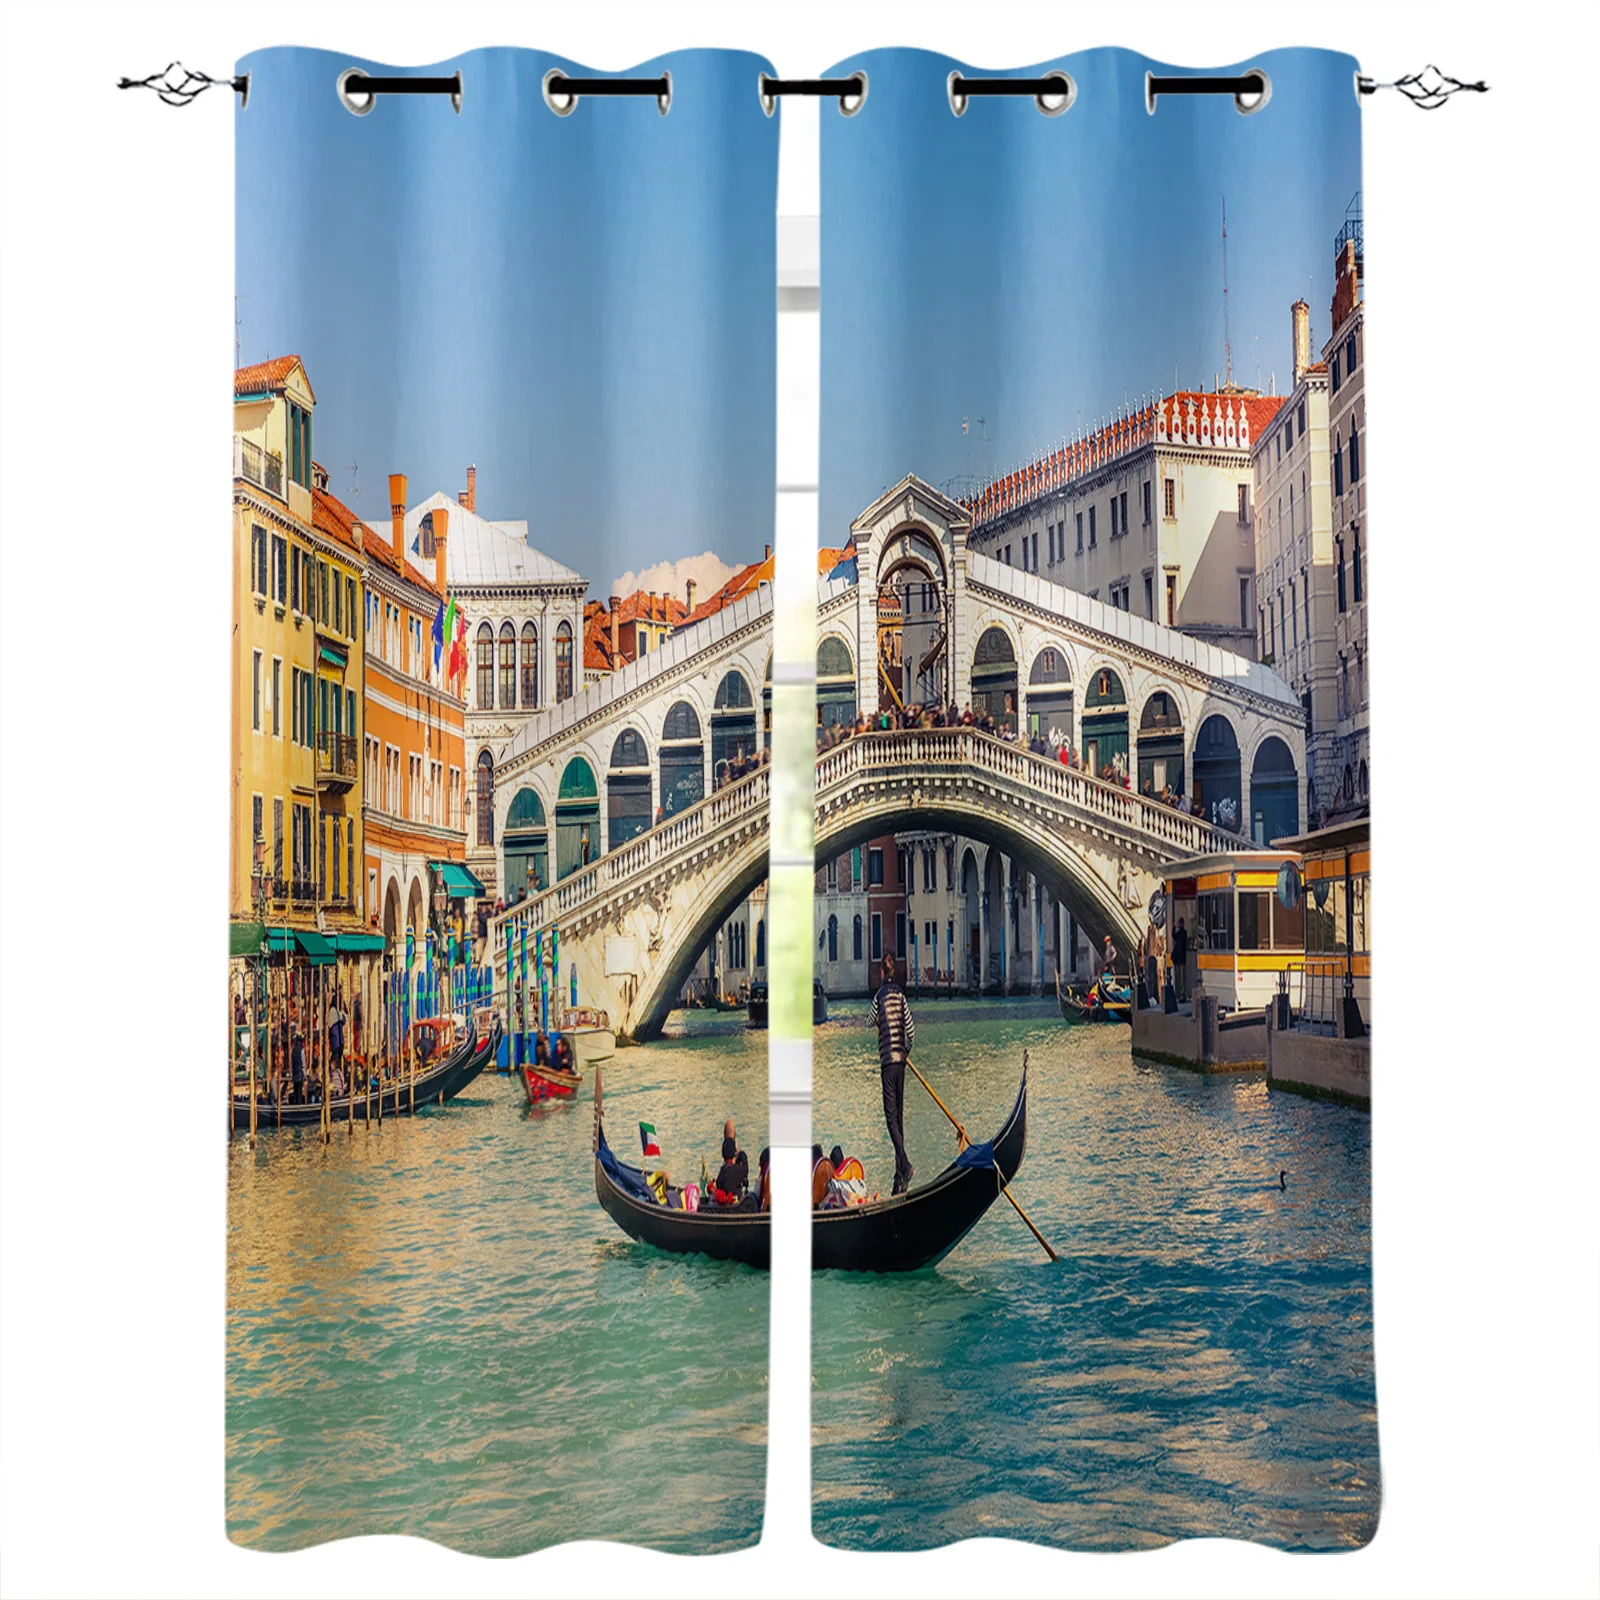 

Итальянская речная мост Венеция красота втулка фотоэлемент для гостиной спальни кухни окна украшение для дома Drapre